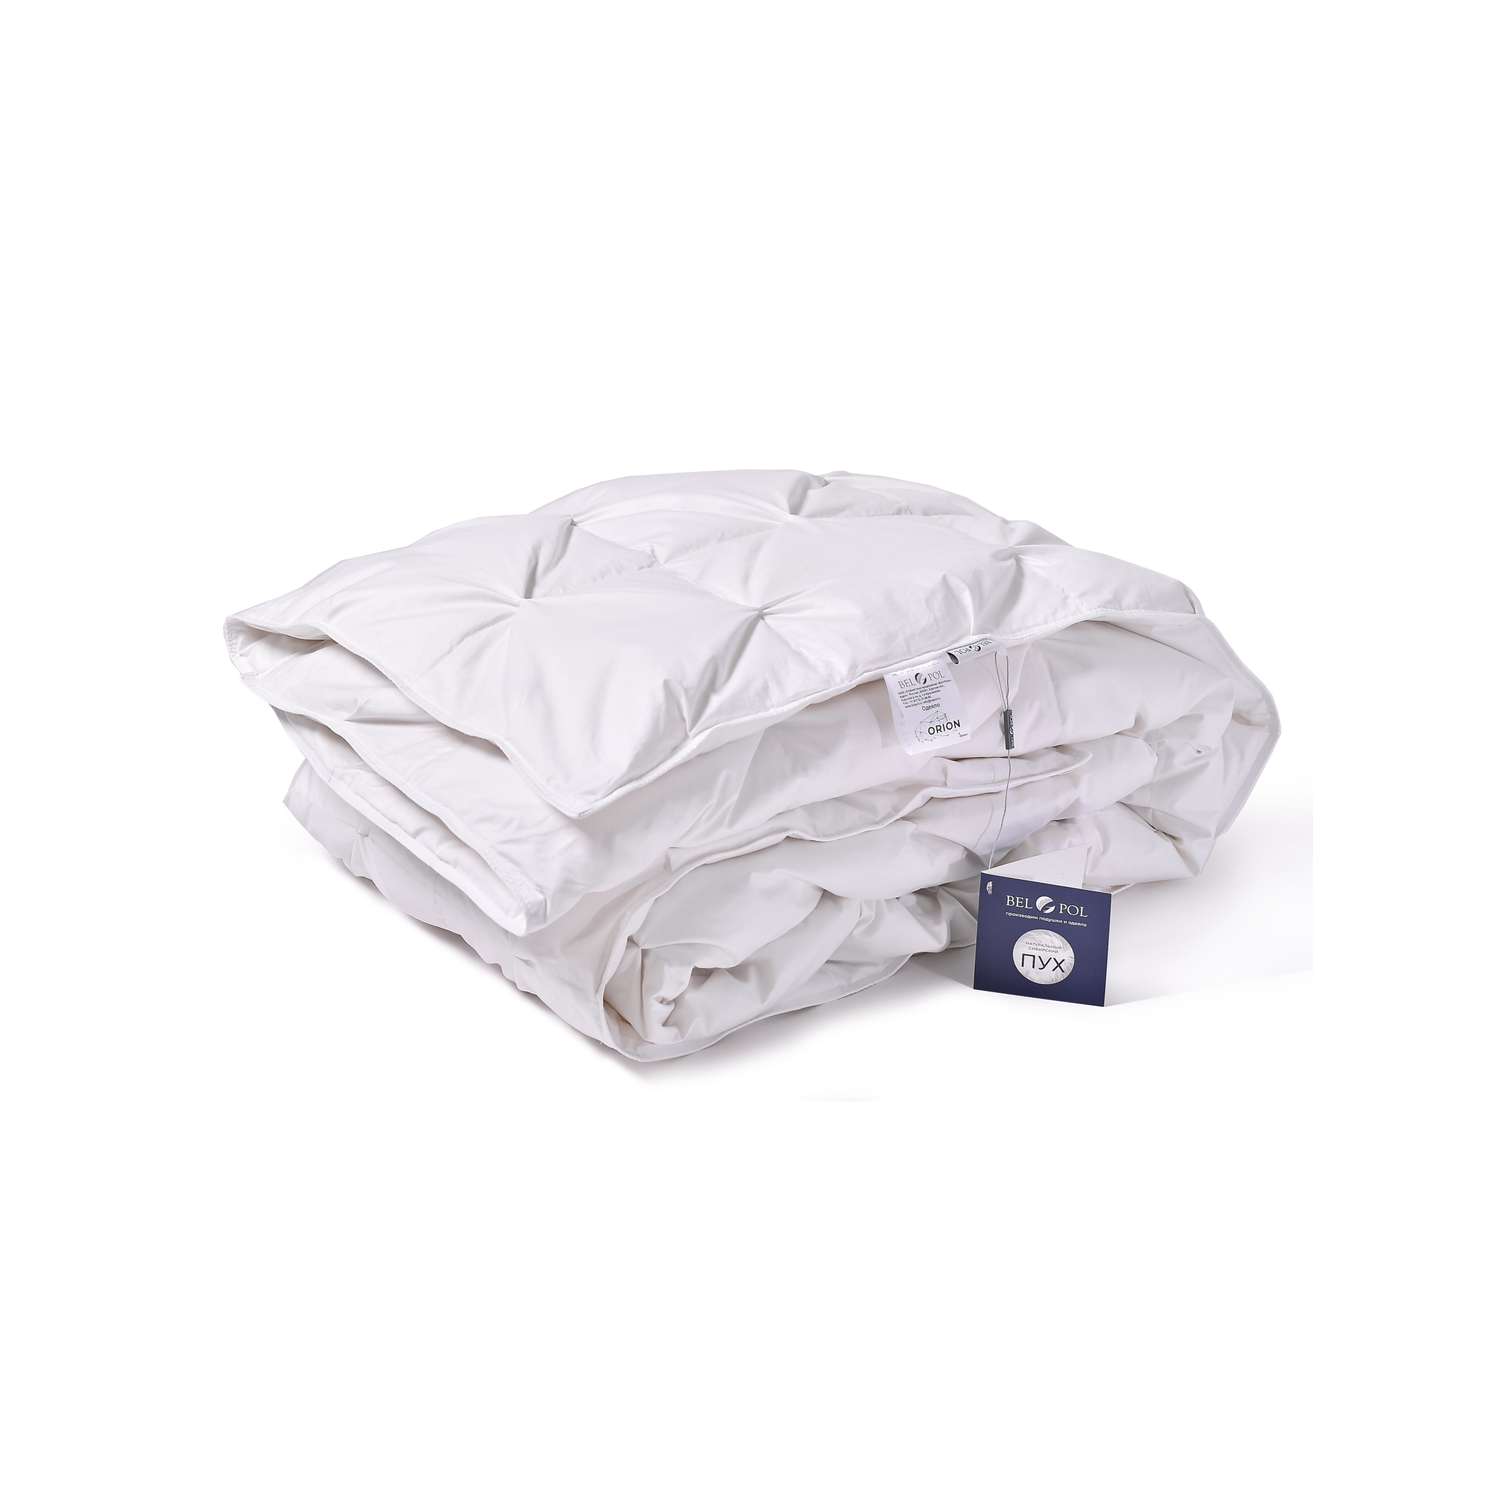 Одеяло BelPol пуховое BP ORION белый 140х205 буфы - фото 2